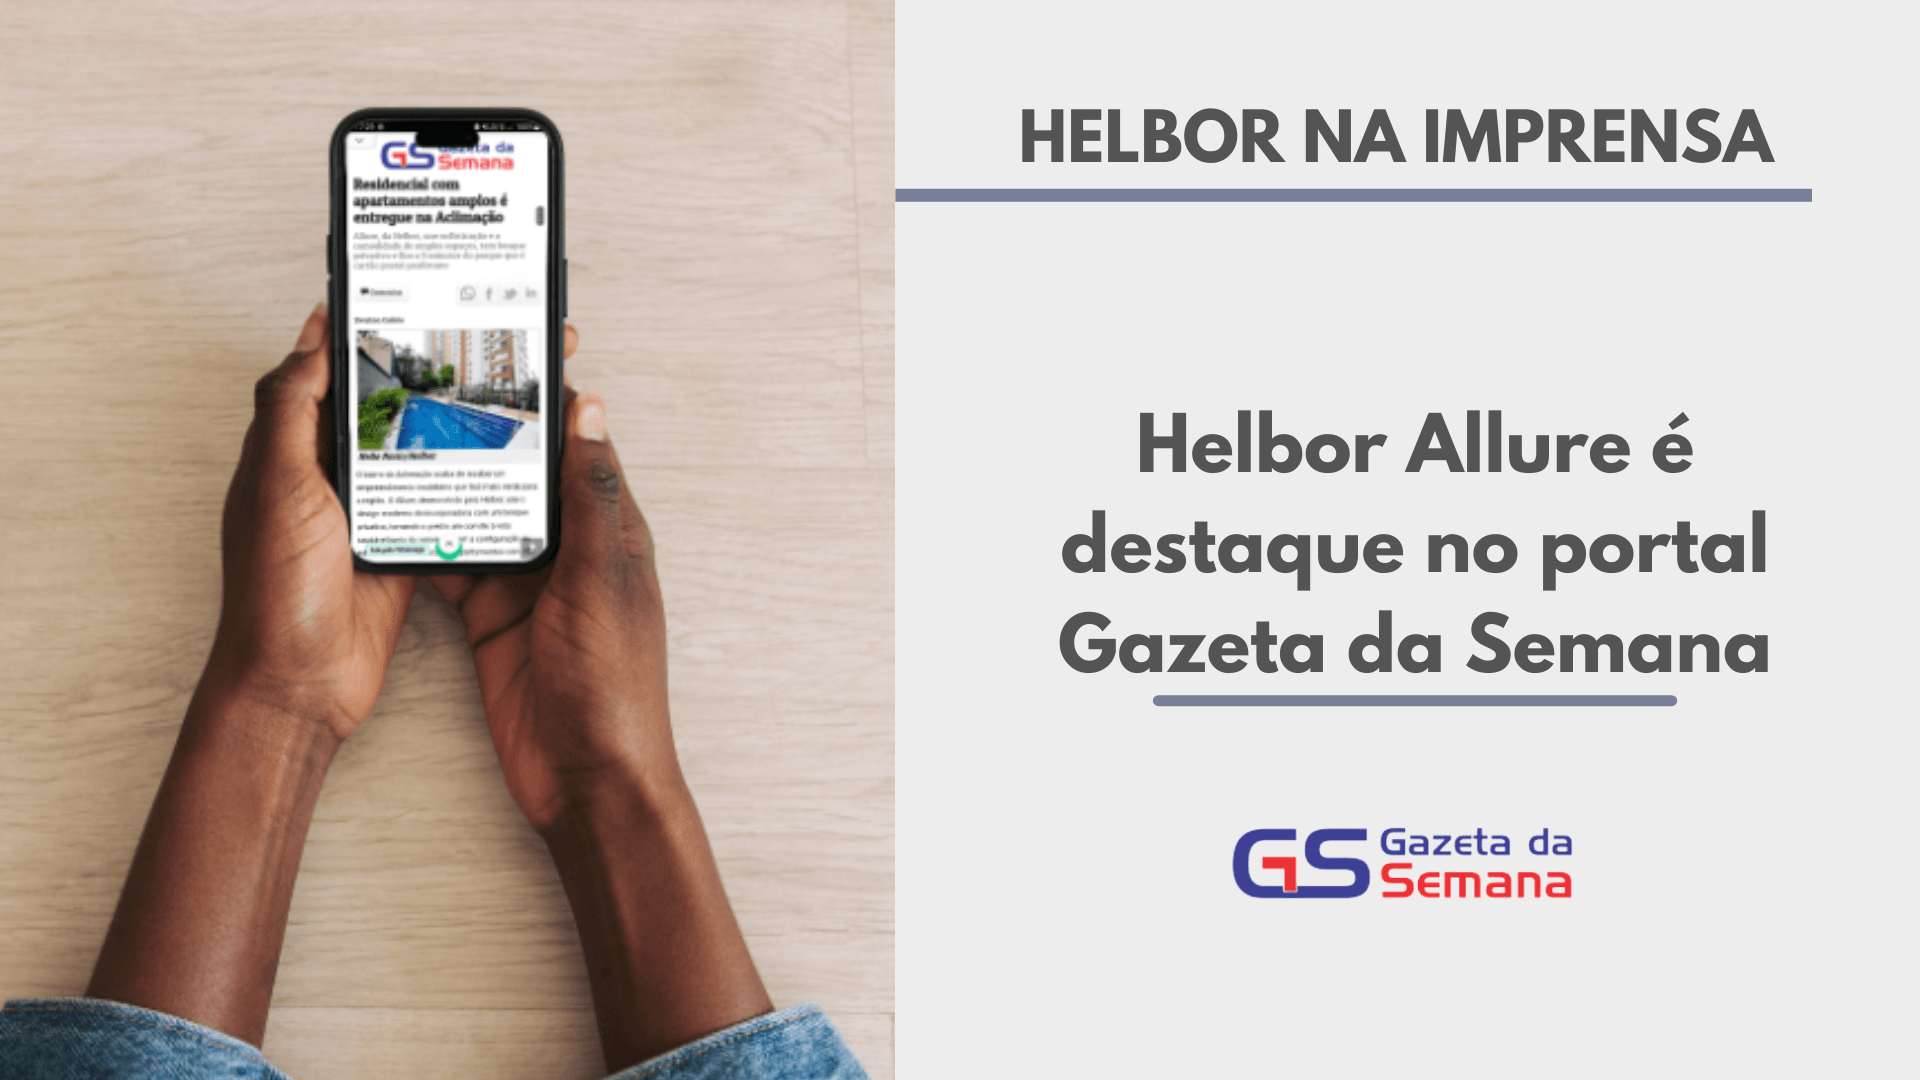 Helbor Allure é destaque no portal Gazeta da Semana